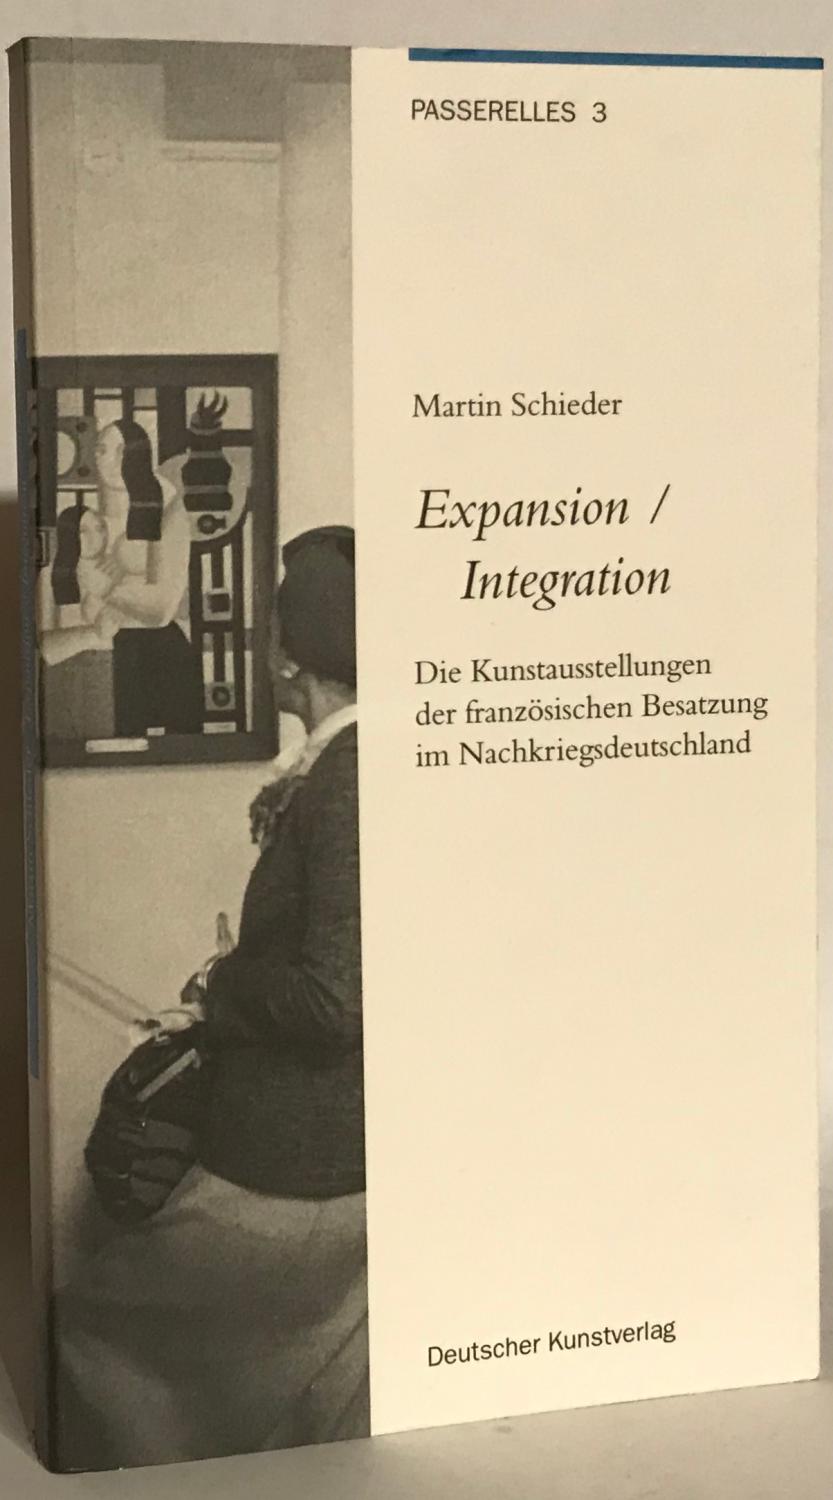 Expansion - Integration. Die Kunstausstellung der französischen Besatzung im Nachkriegsdeutschland. Passerelles 3. - Schieder, Martin